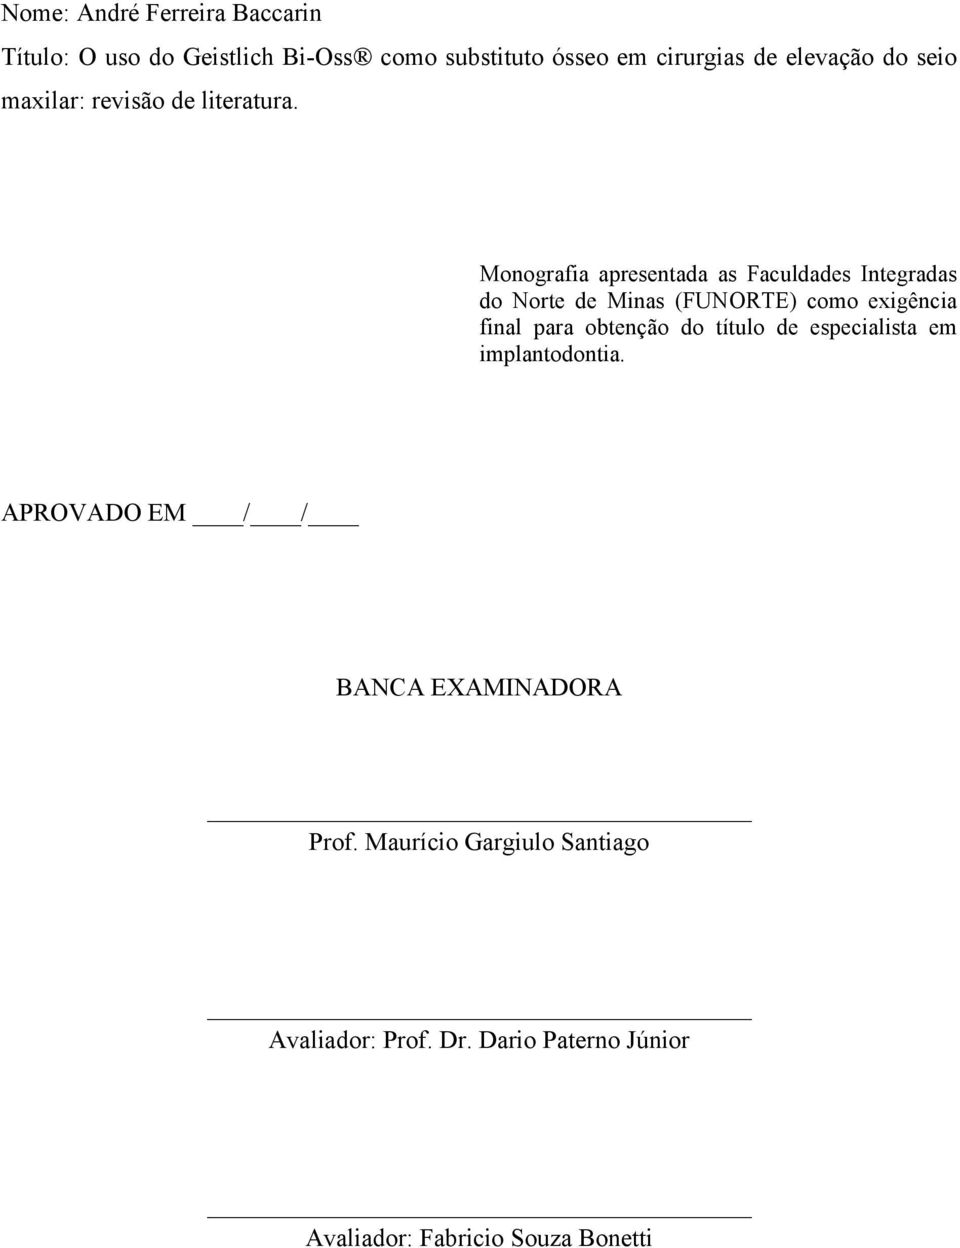 Monografia apresentada as Faculdades Integradas do Norte de Minas (FUNORTE) como exigência final para obtenção